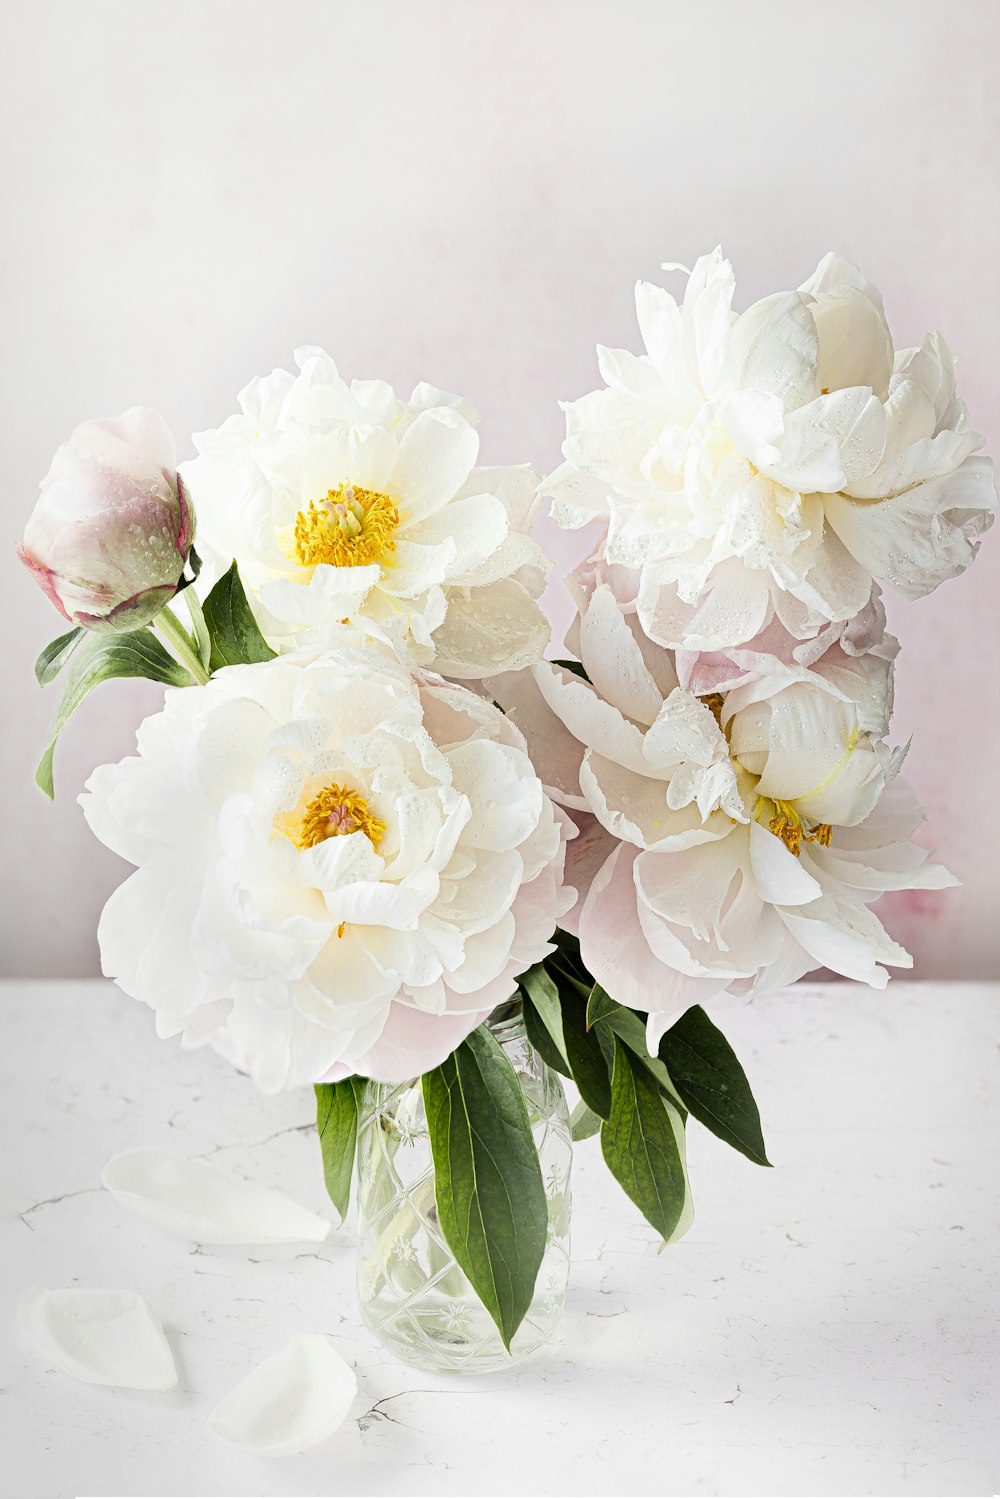 テーブルの上に白い花でいっぱいの花瓶